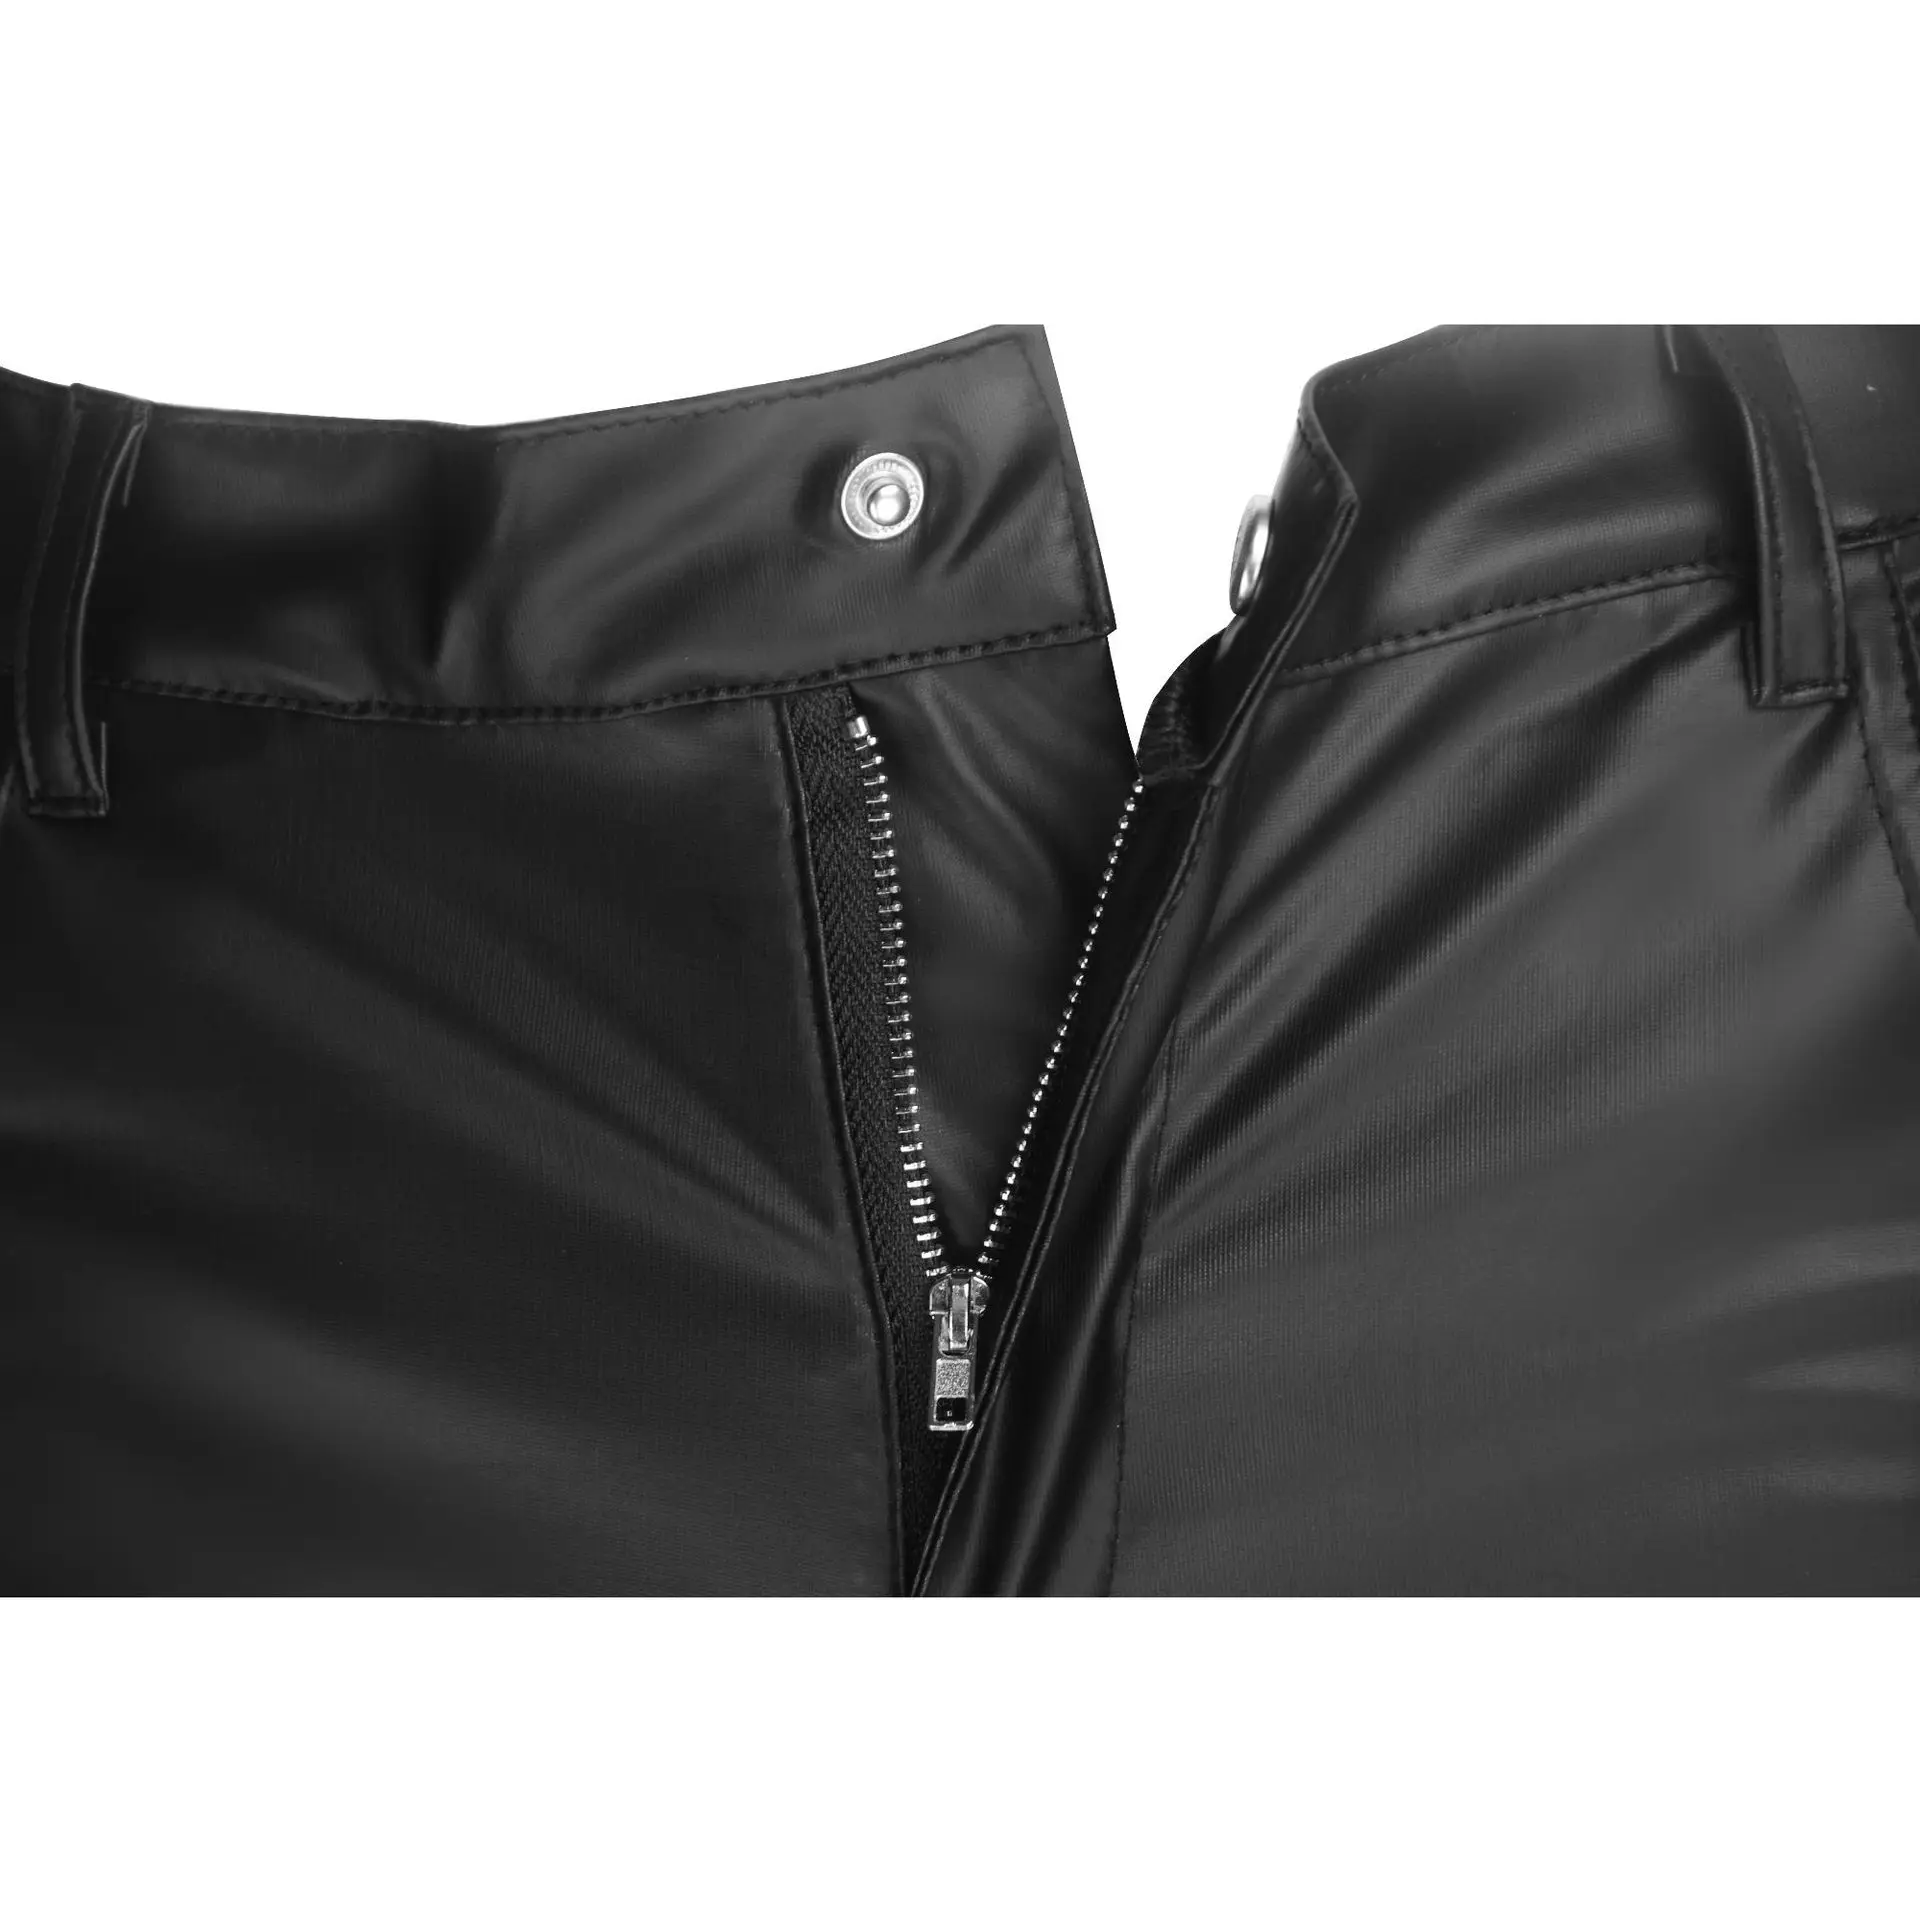 Мужские кожаные брюки мужские модные повседневные брюки мужские Slim Fit PU кожаные локомотивные брюки панк-рок сценическая одежда 2018 новая